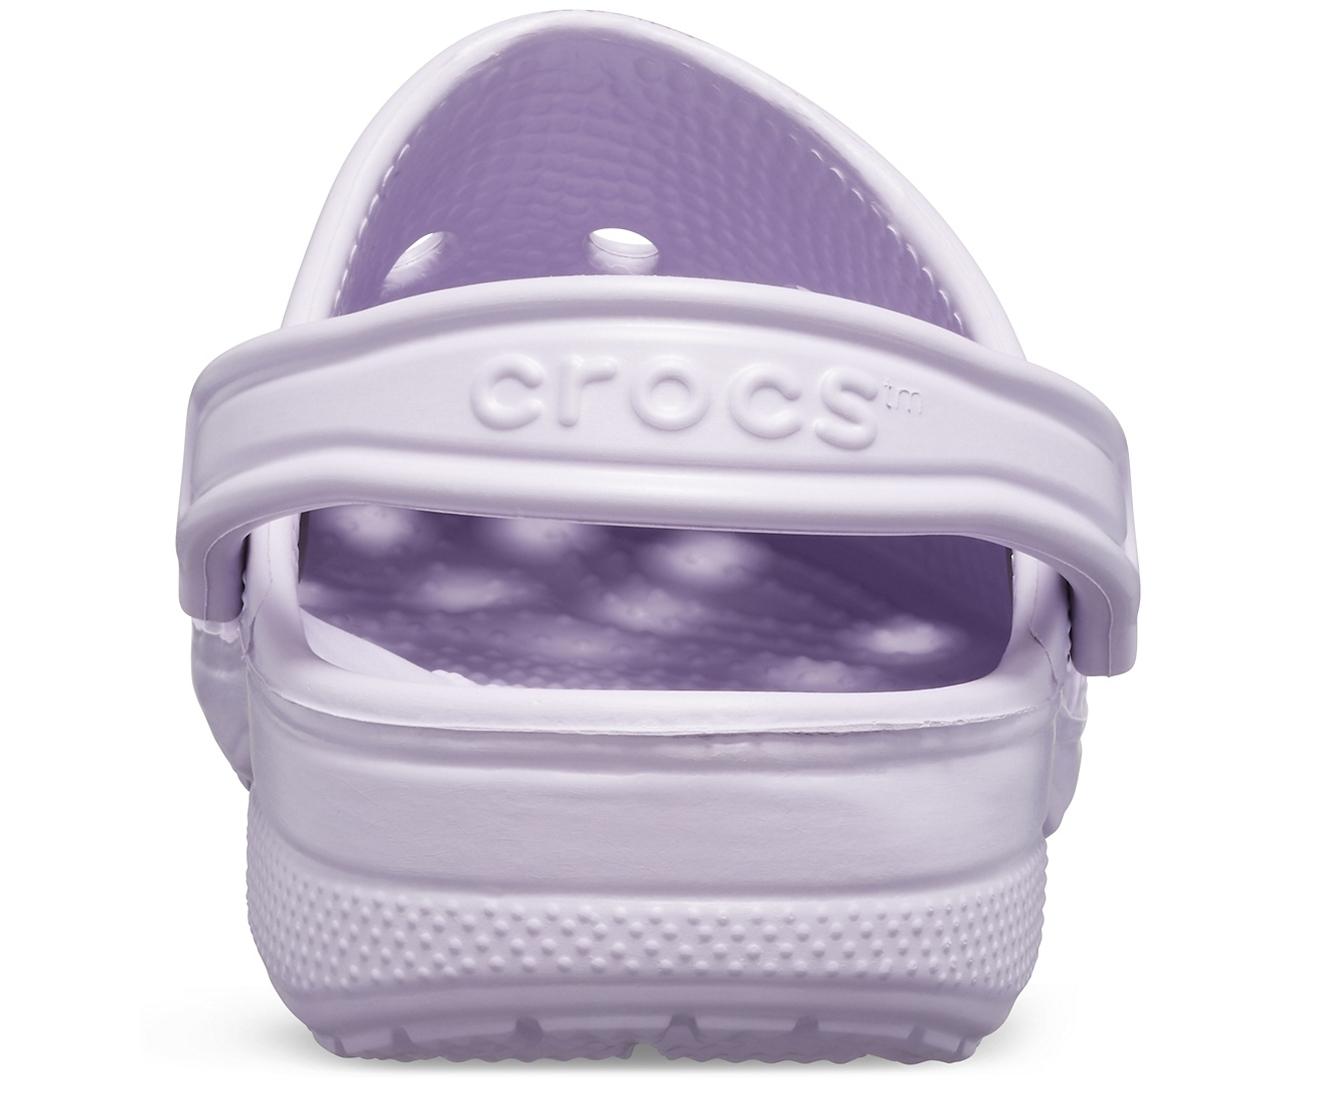 Buy > lavender crocs fuzzy > in stock